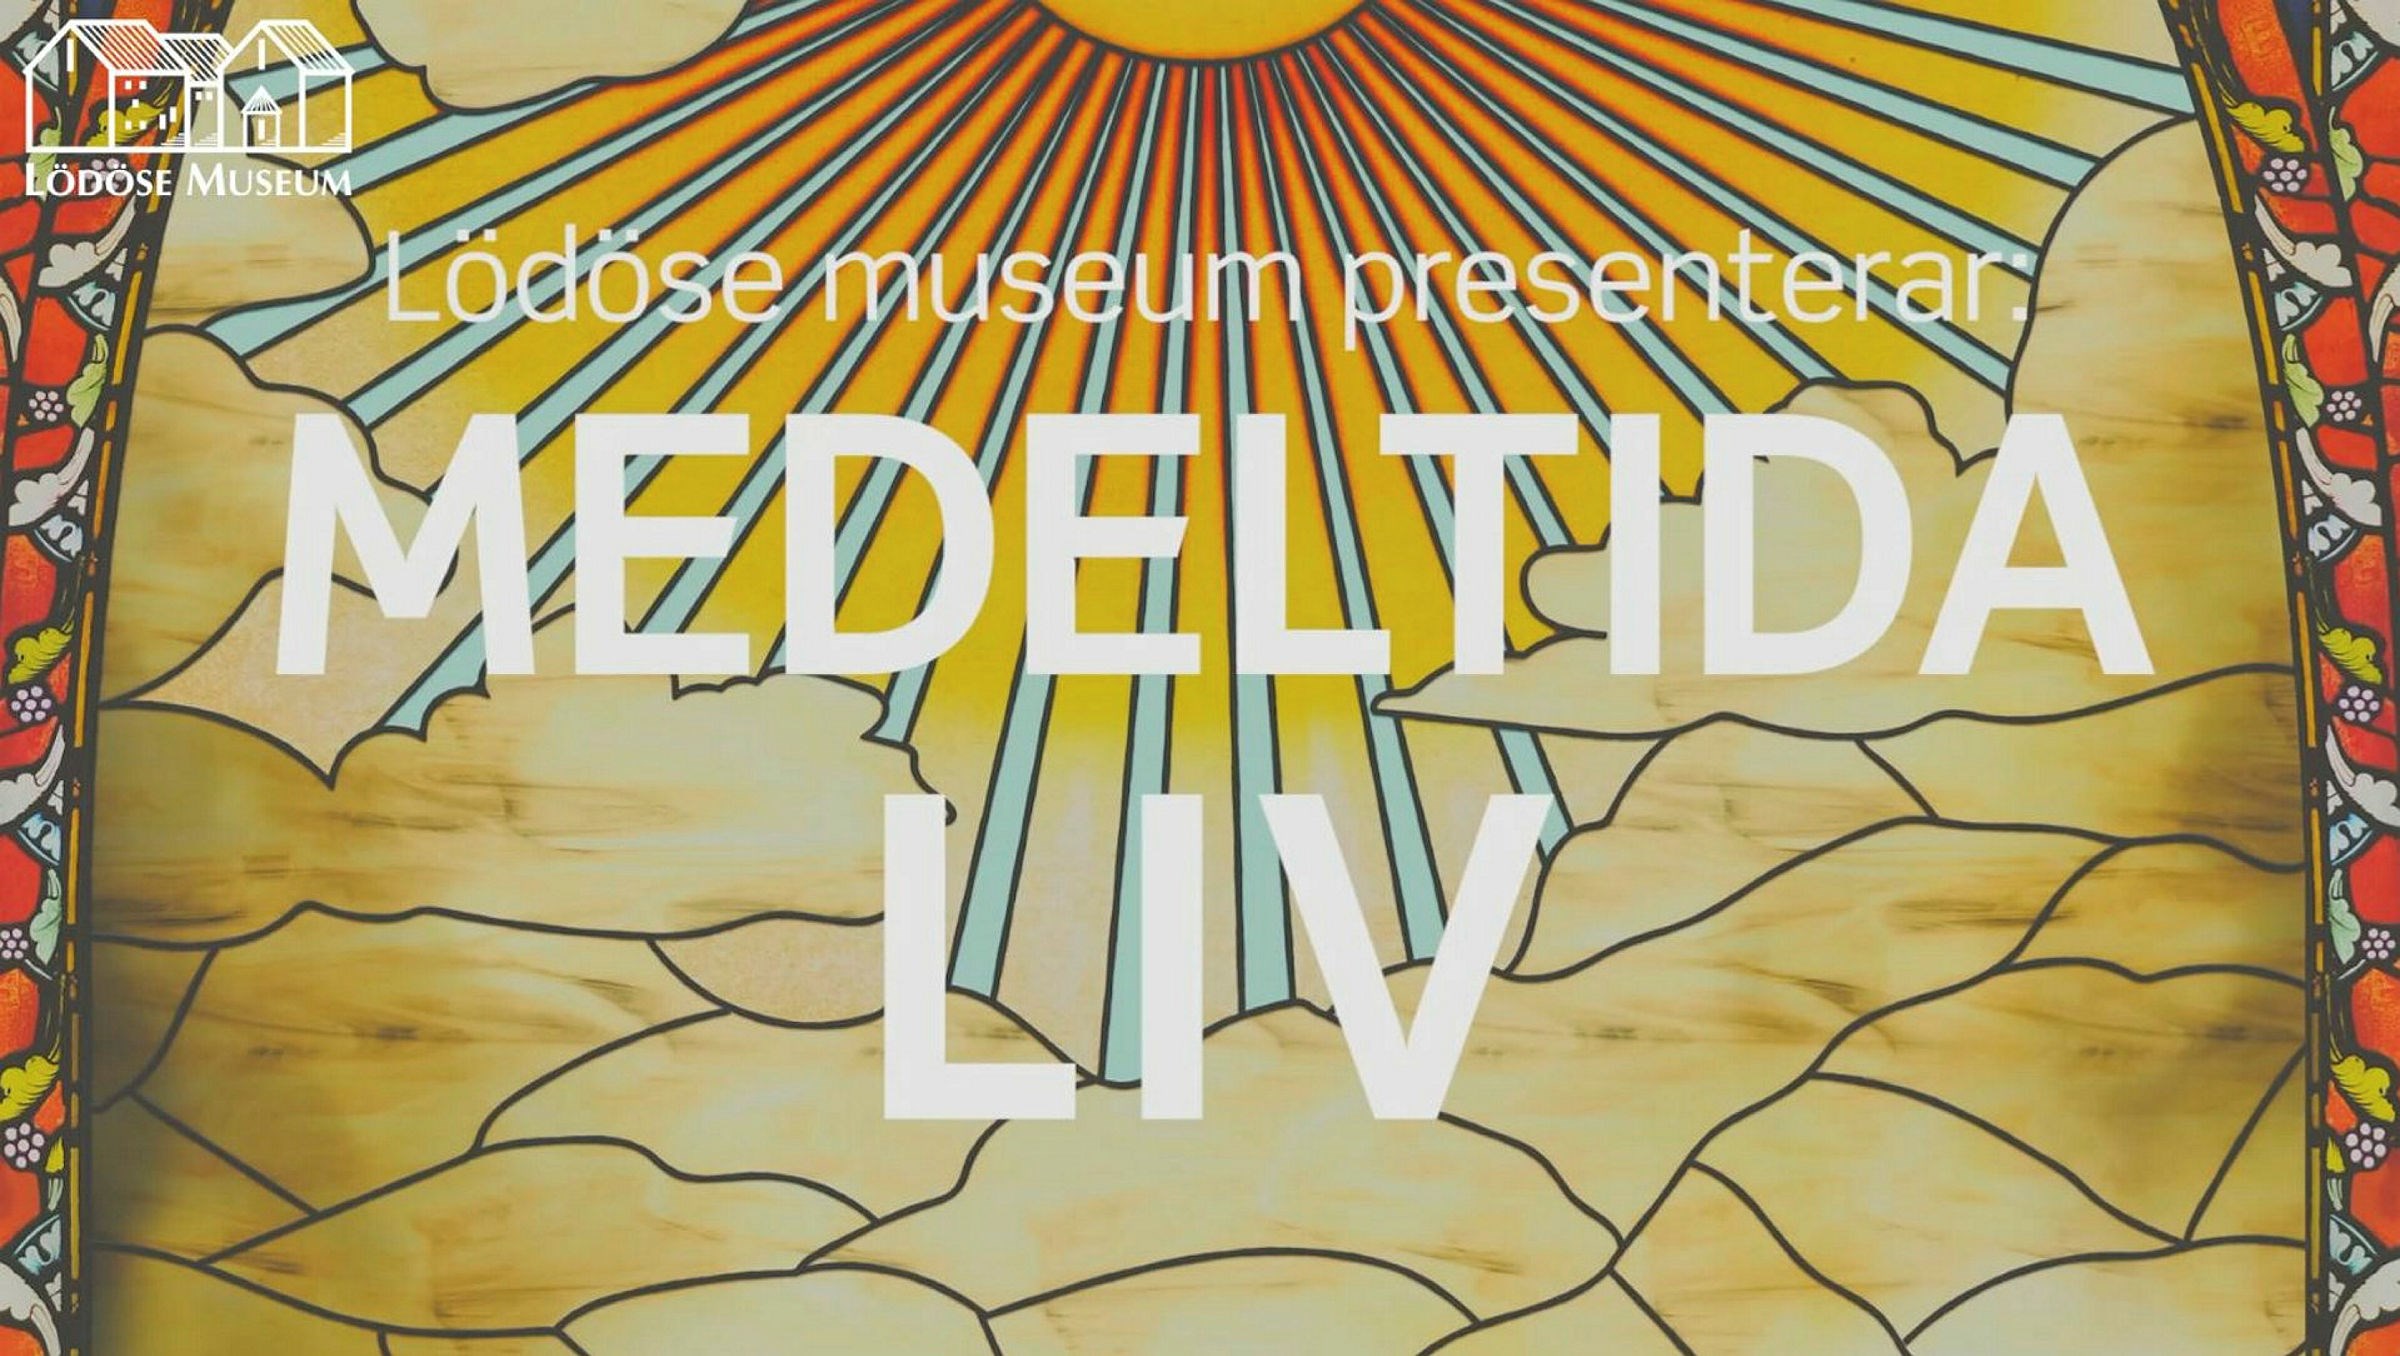 En ritad bild med solstrålar i bakgrunden. Text lyder: Lödöse museum presenterar Medeltida Liv